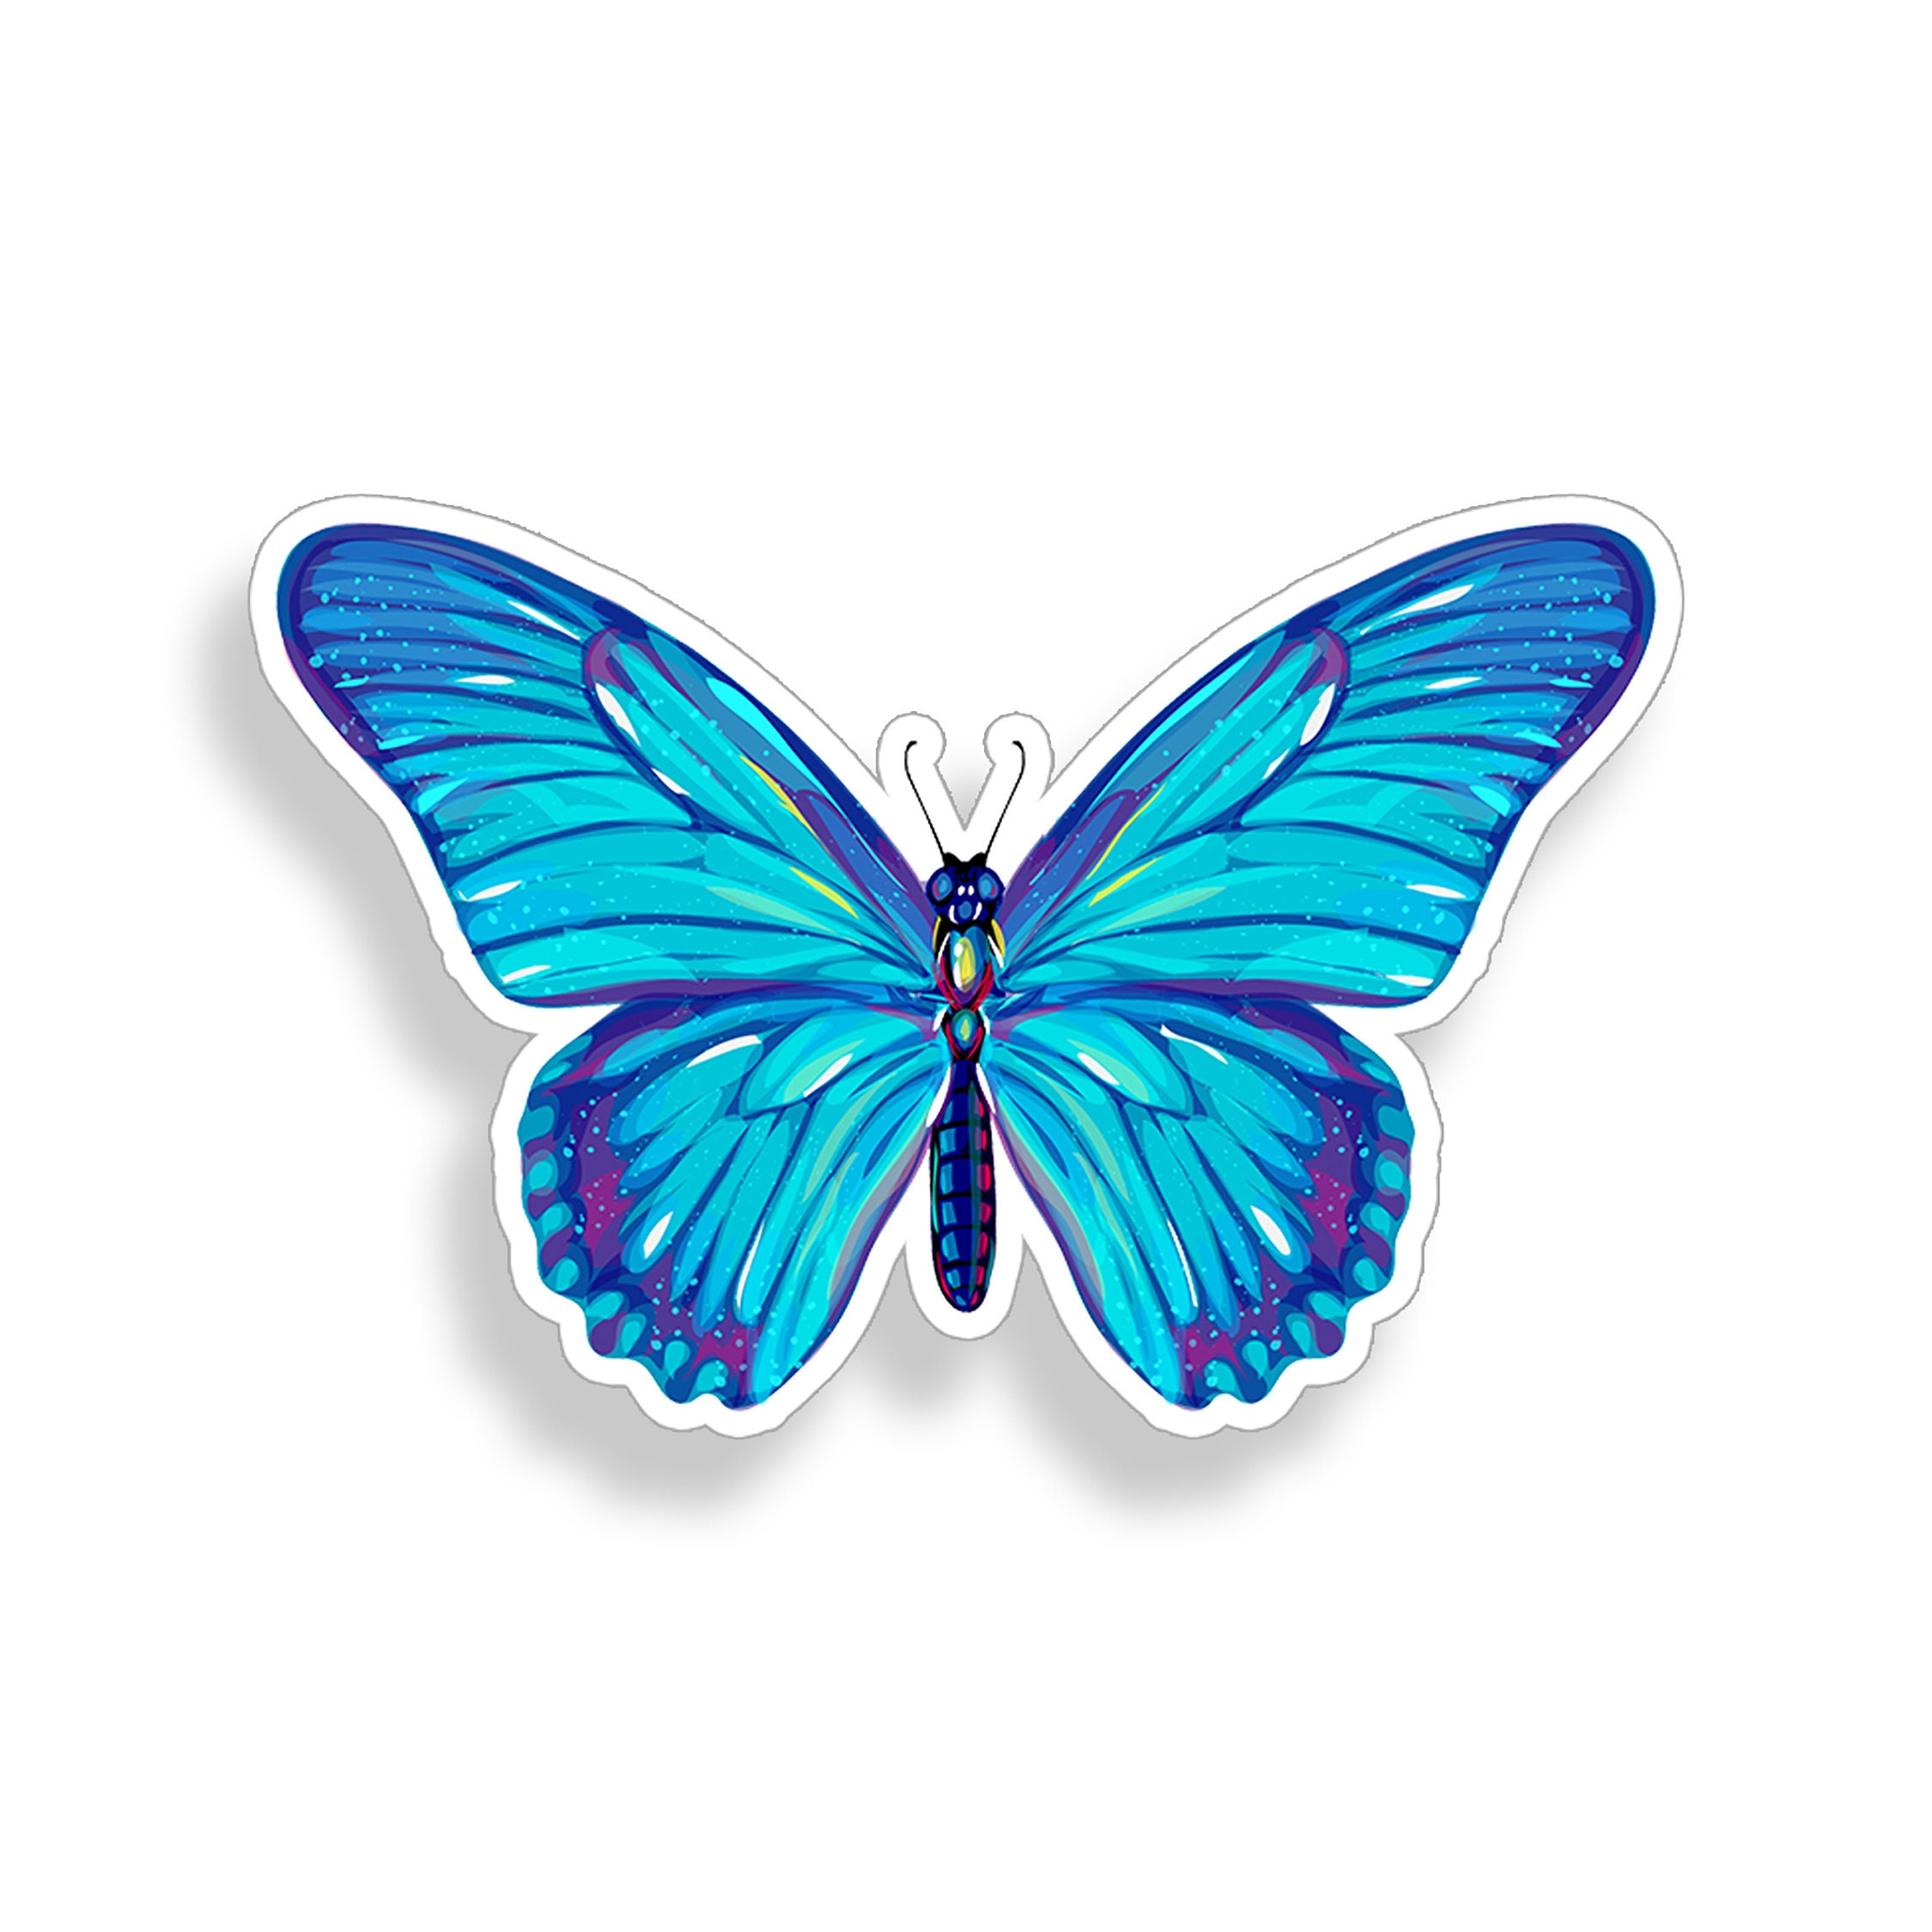 Sticker / Aufkleber Schmetterling, für Auto / Motorrad / Laptop / Dekoration  / Kühlschrank, Blau-Schwarz, 4-teiliges Set : : Auto & Motorrad